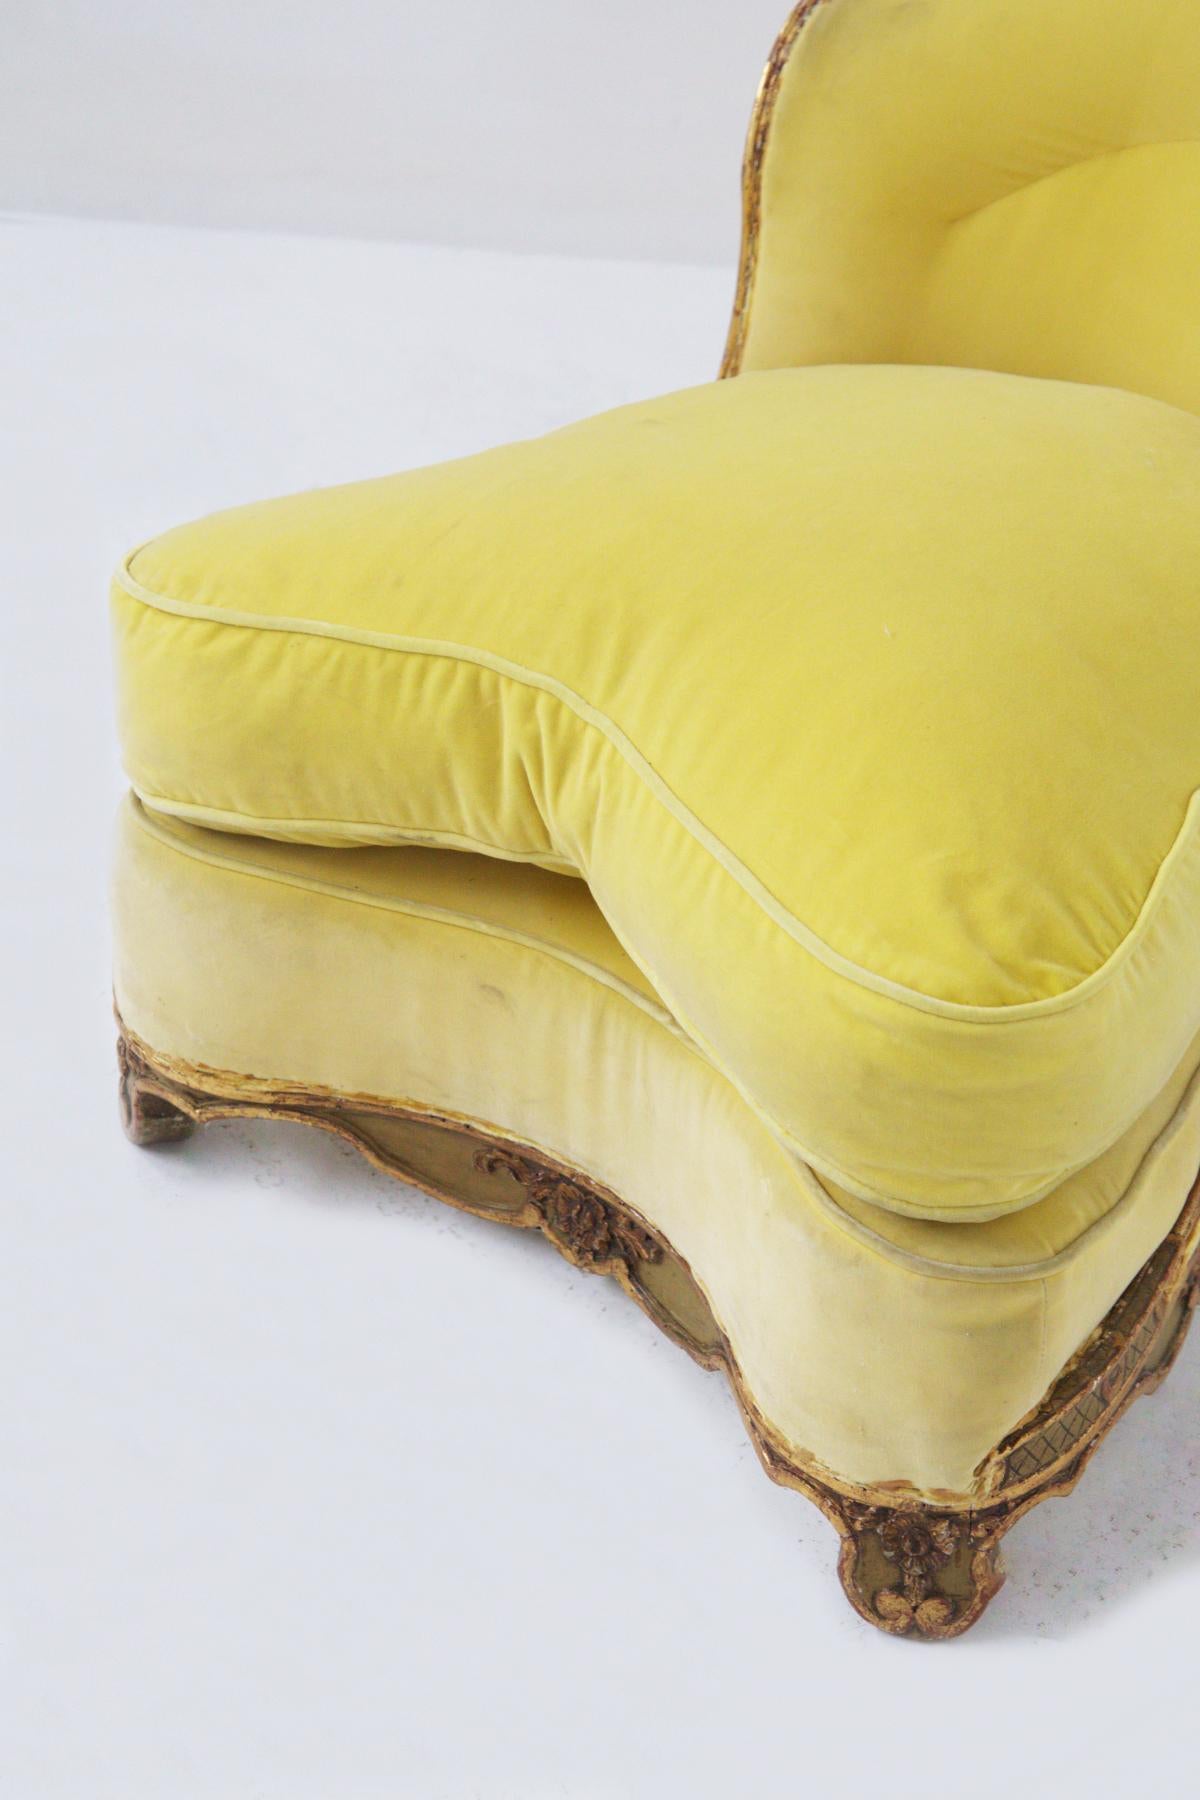 Schöner Sessel aus einer elitären venezianischen Bürgerfamilie, deren Design auch eine Inspiration ist. Der Sessel ist aus vergoldetem Holz in einem mächtigen Gestell mit 4 Stützfüßen, jeweils für jede Ecke. Die Formen sind gewunden und auffallend